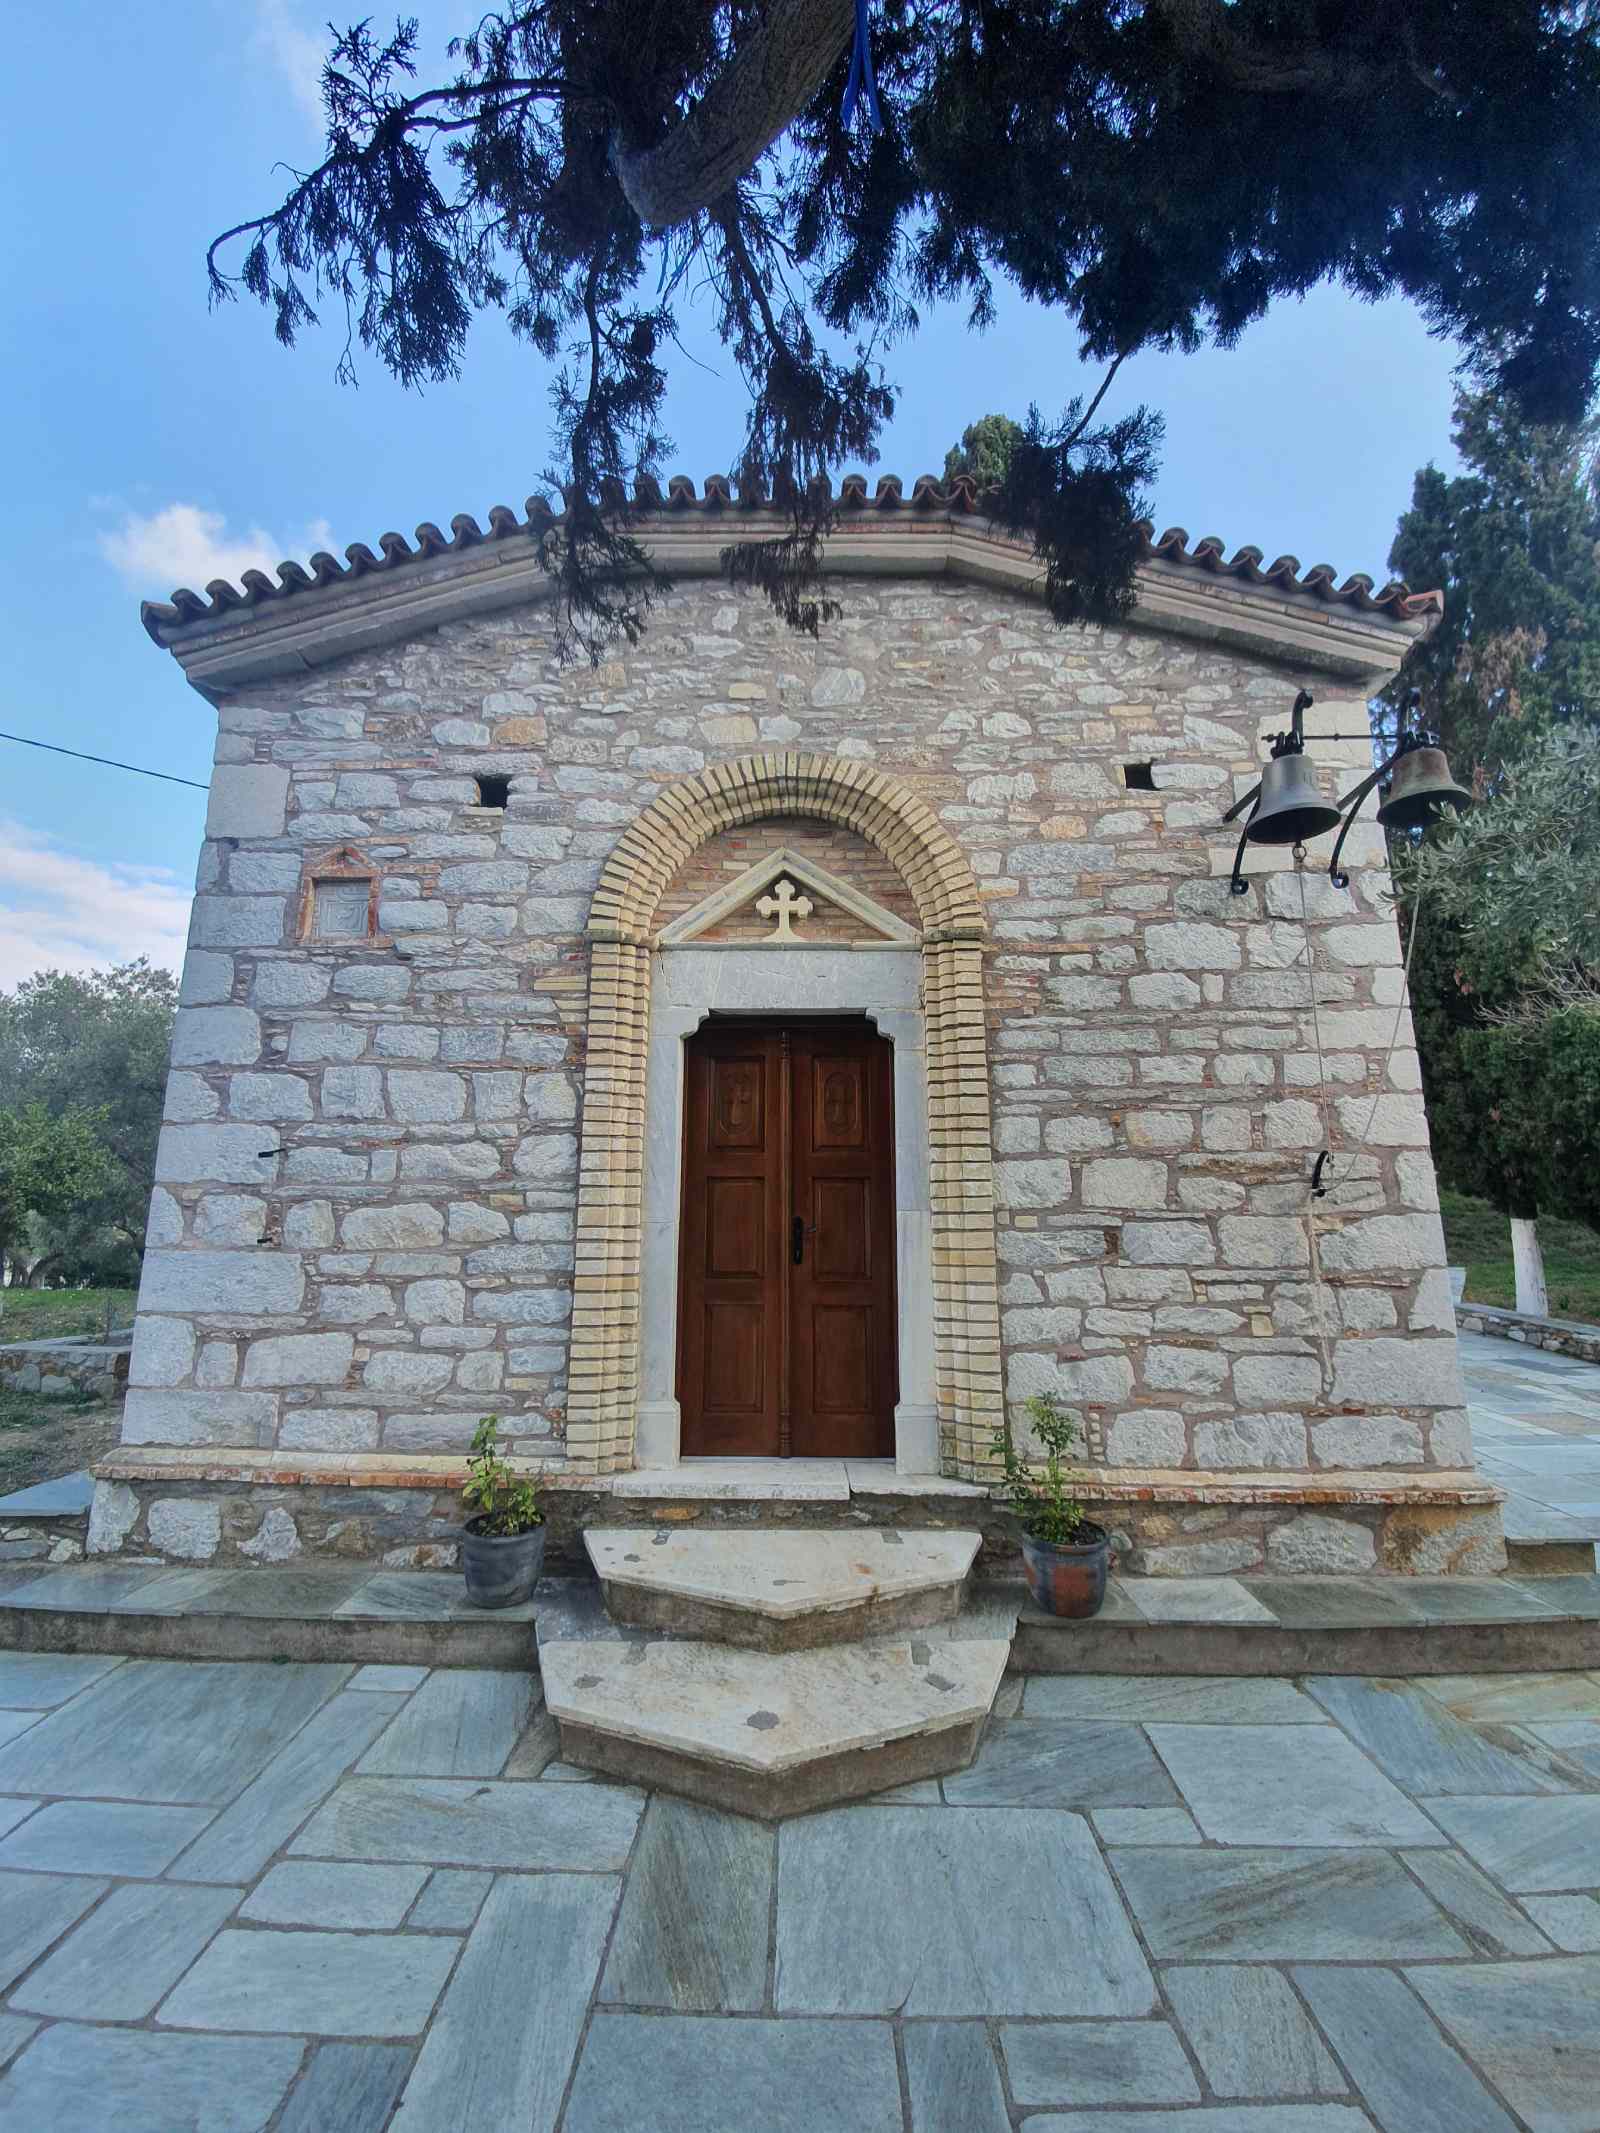 Agios Georgios (Saint George)